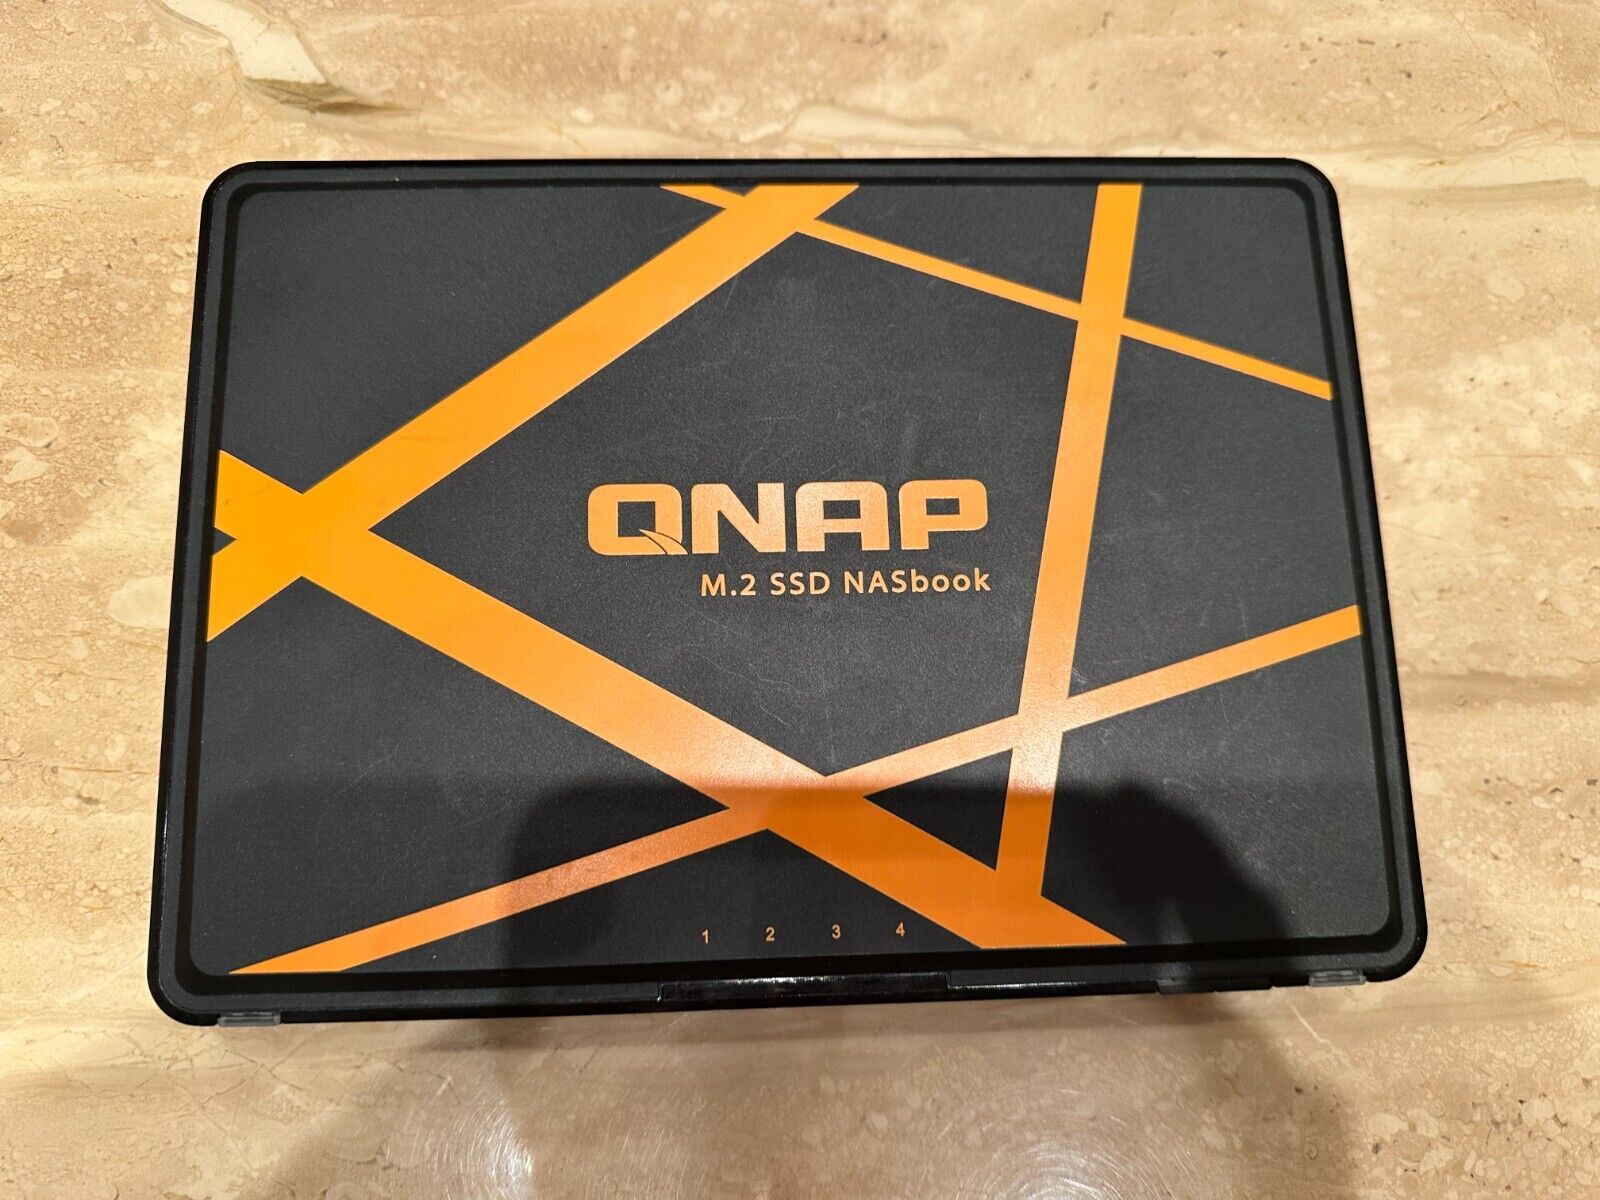 QNAP M.2 SSD NASbook Model: TBS-453A Network Attached Storage 4x512GB M.2 SSDs 